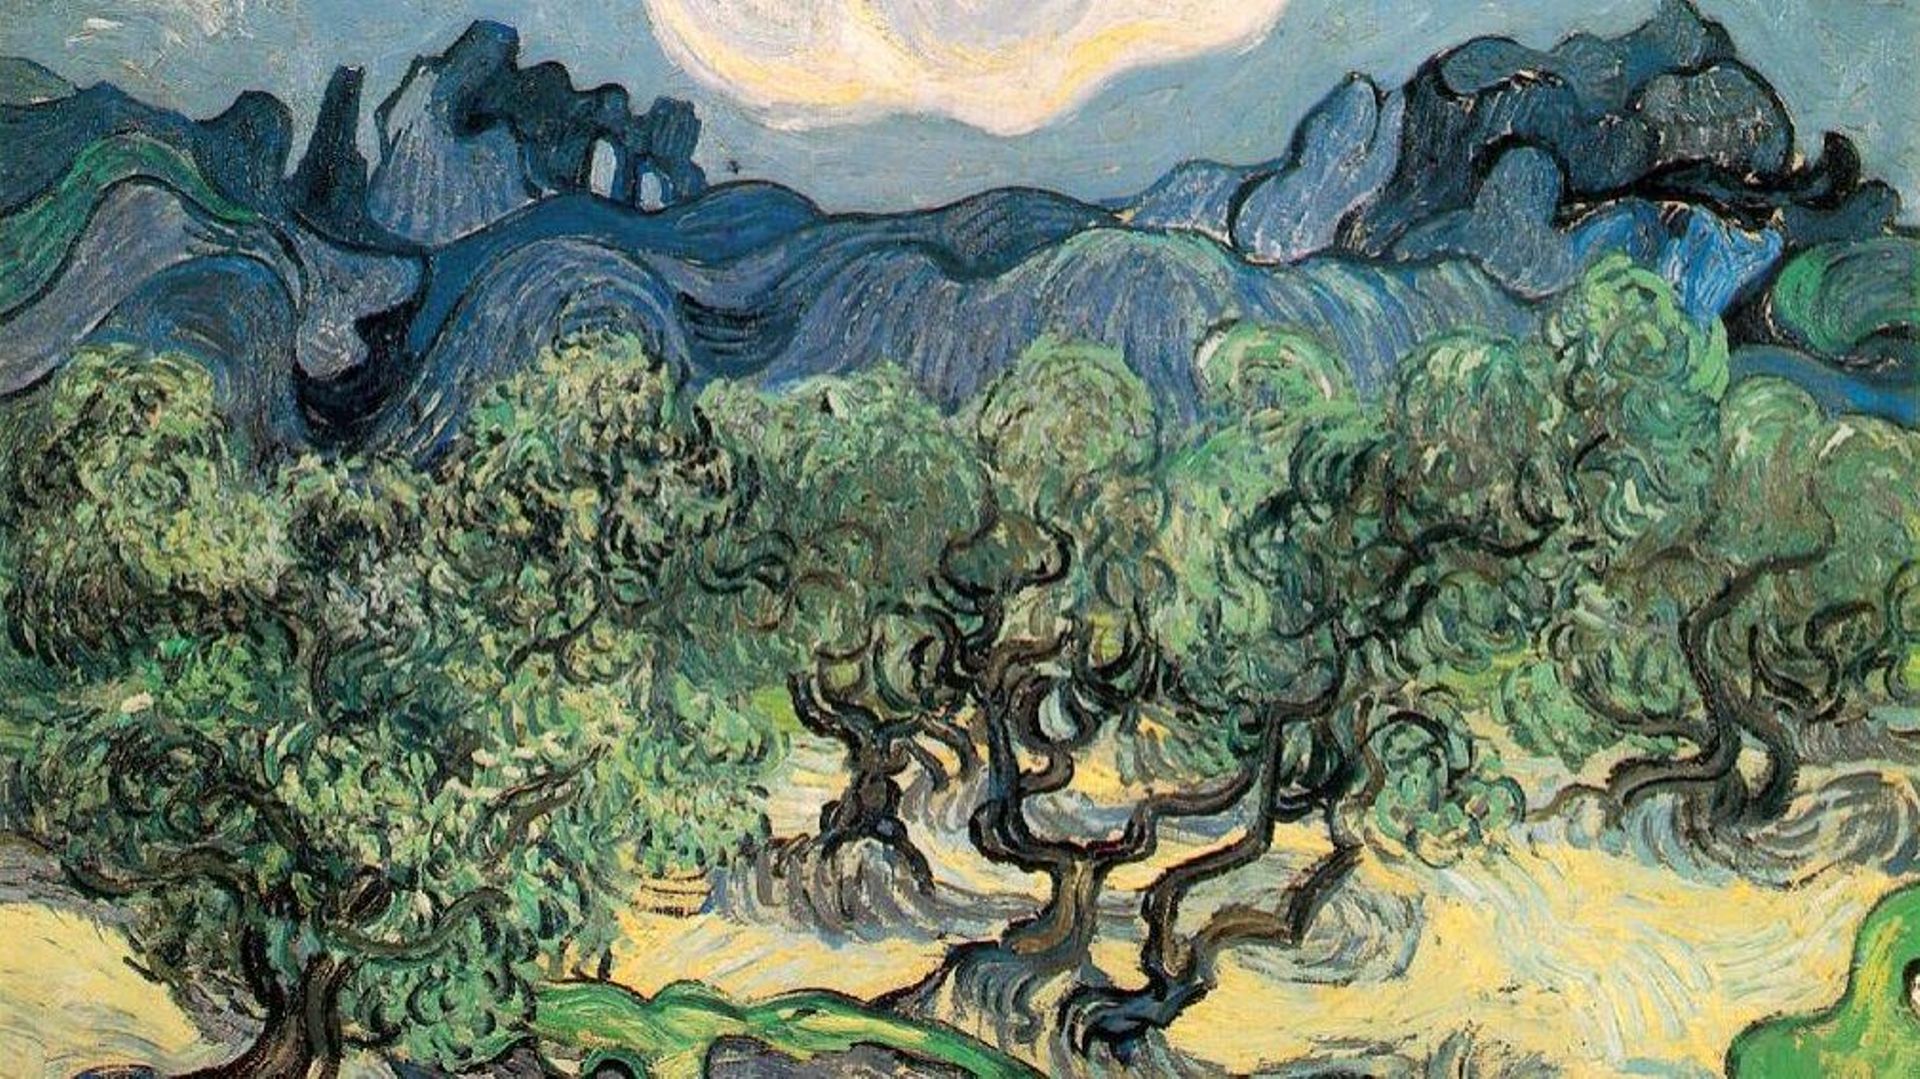 Oliviers peint en 1889 par Vincent Van Gogh